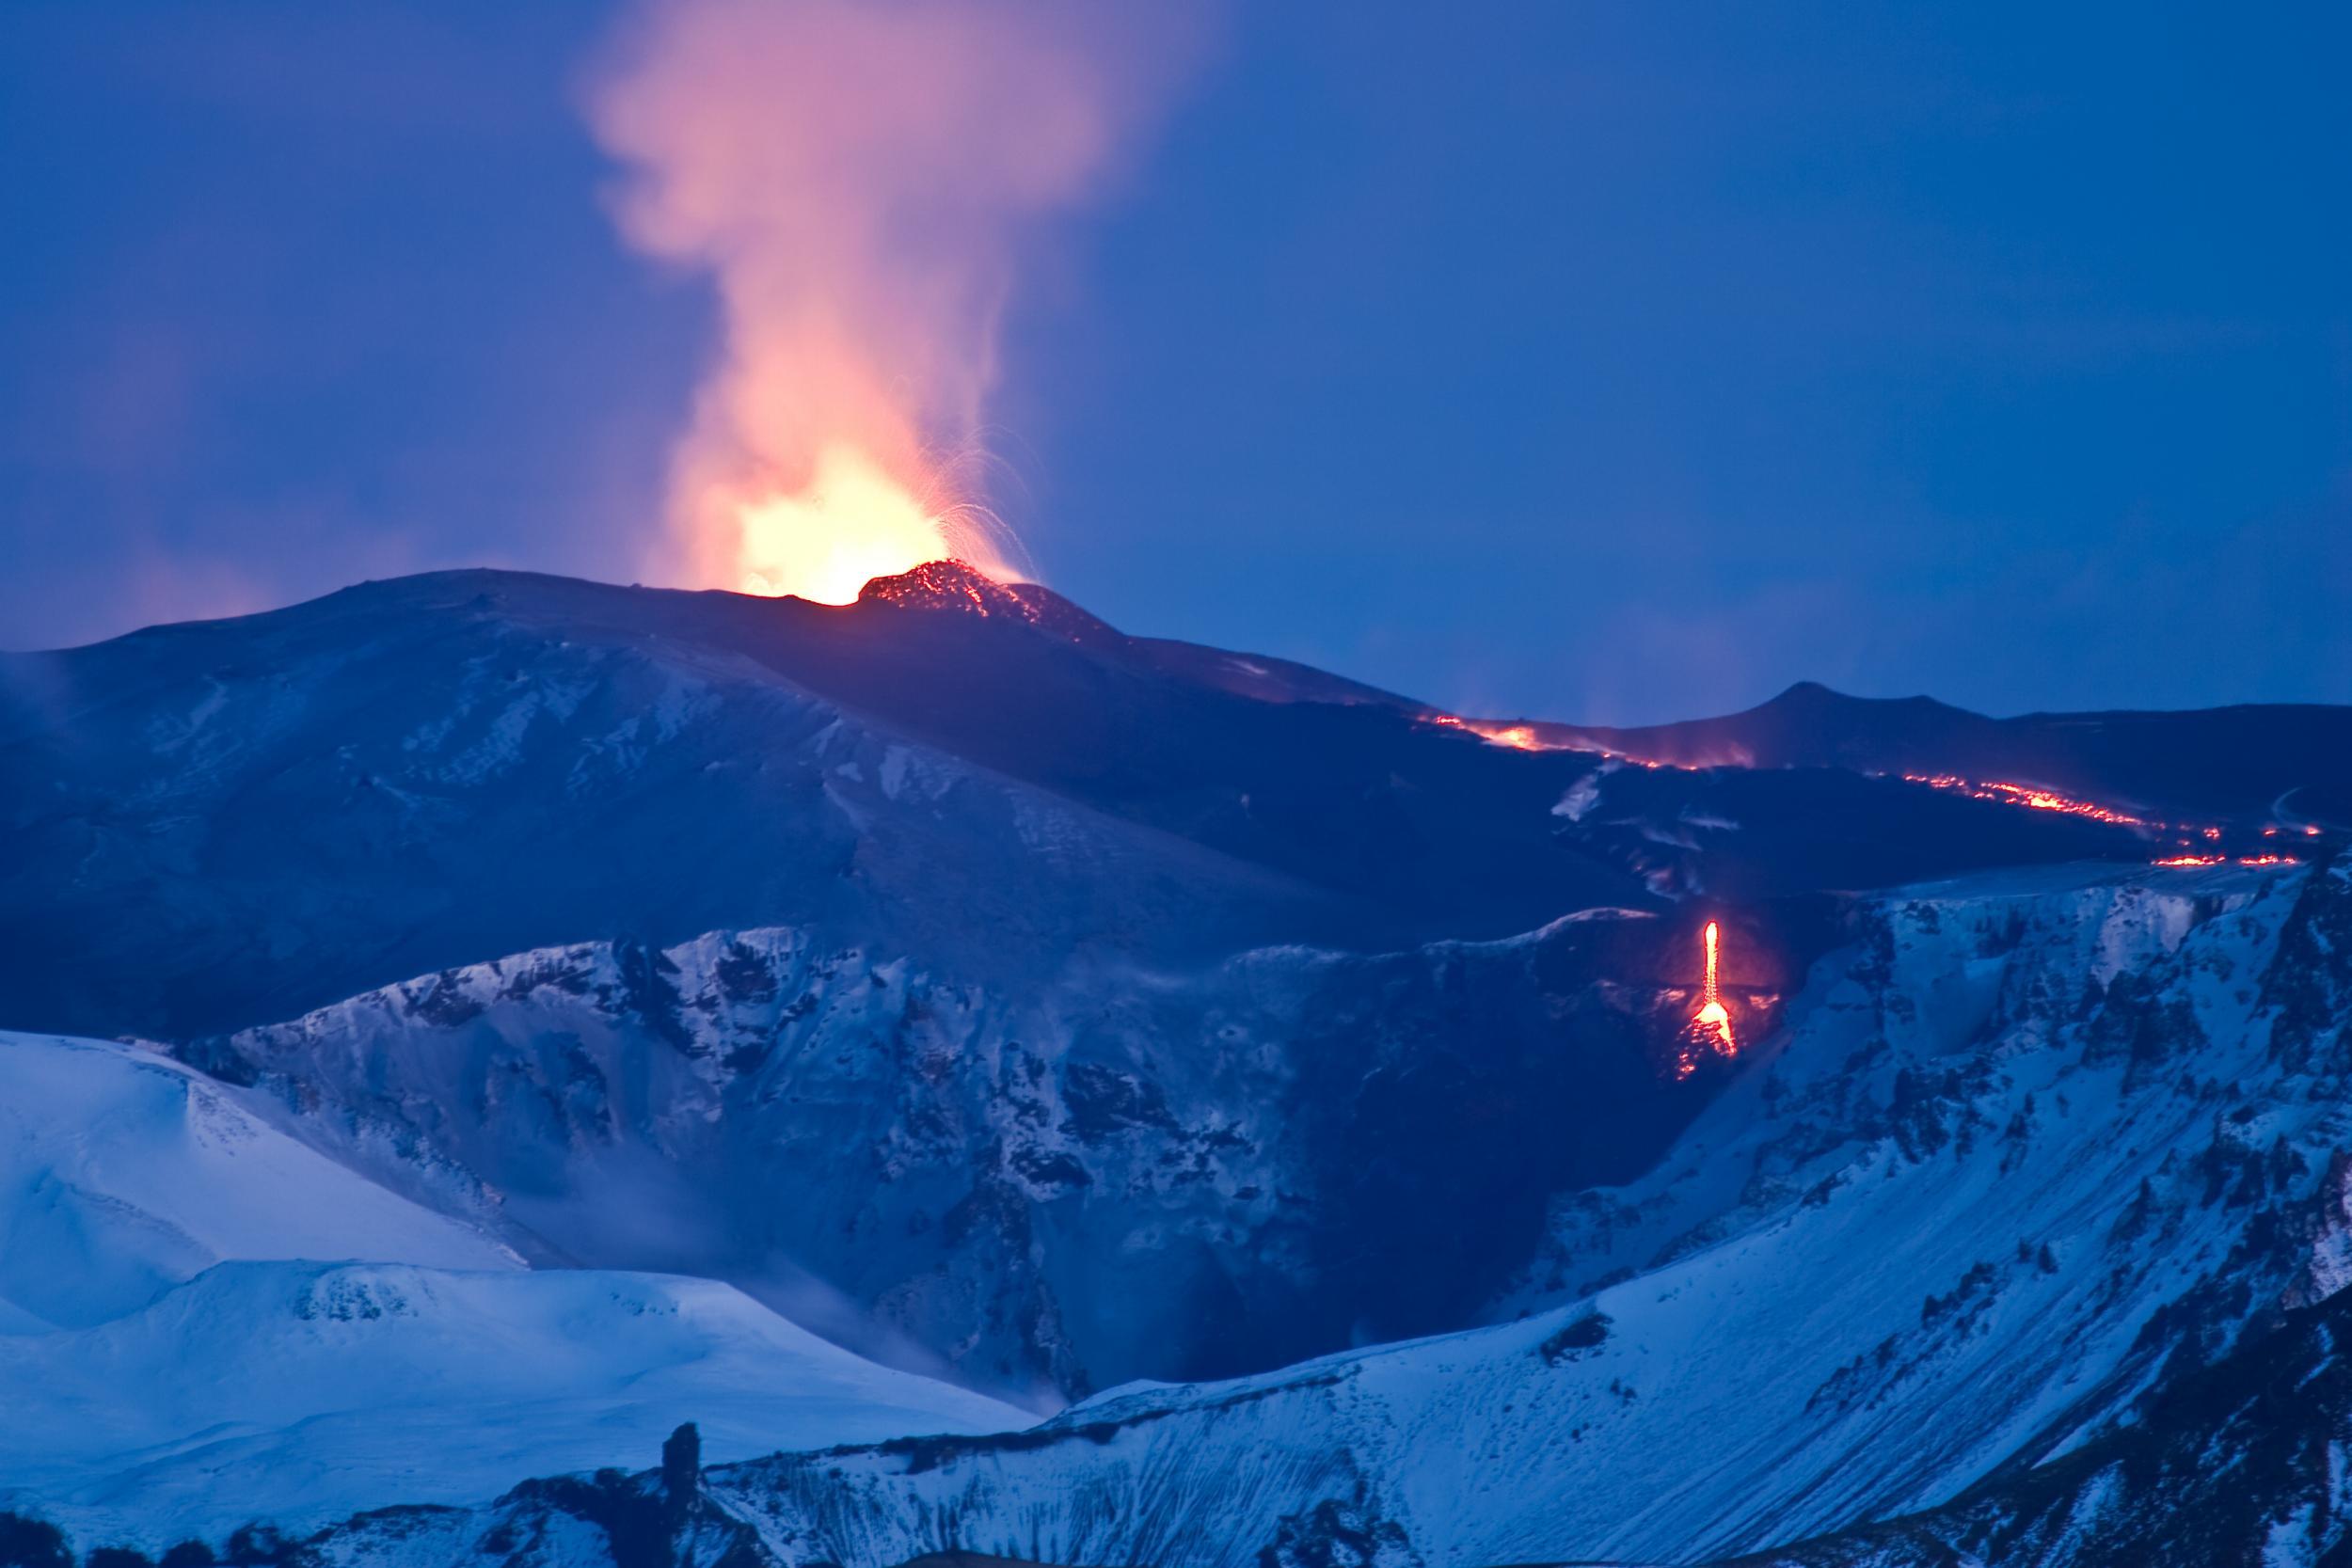 Какую страну называют страной льда и огня. Исландия вулкан Эйяфьятлайокудль извержение 2010. Эйяфьядлайёкюдль вулкан в Исландии. Извержение вулкана Эйяфьятлайокудль в 2010 году. Вулкан Eyjafjallajökull Исландии.